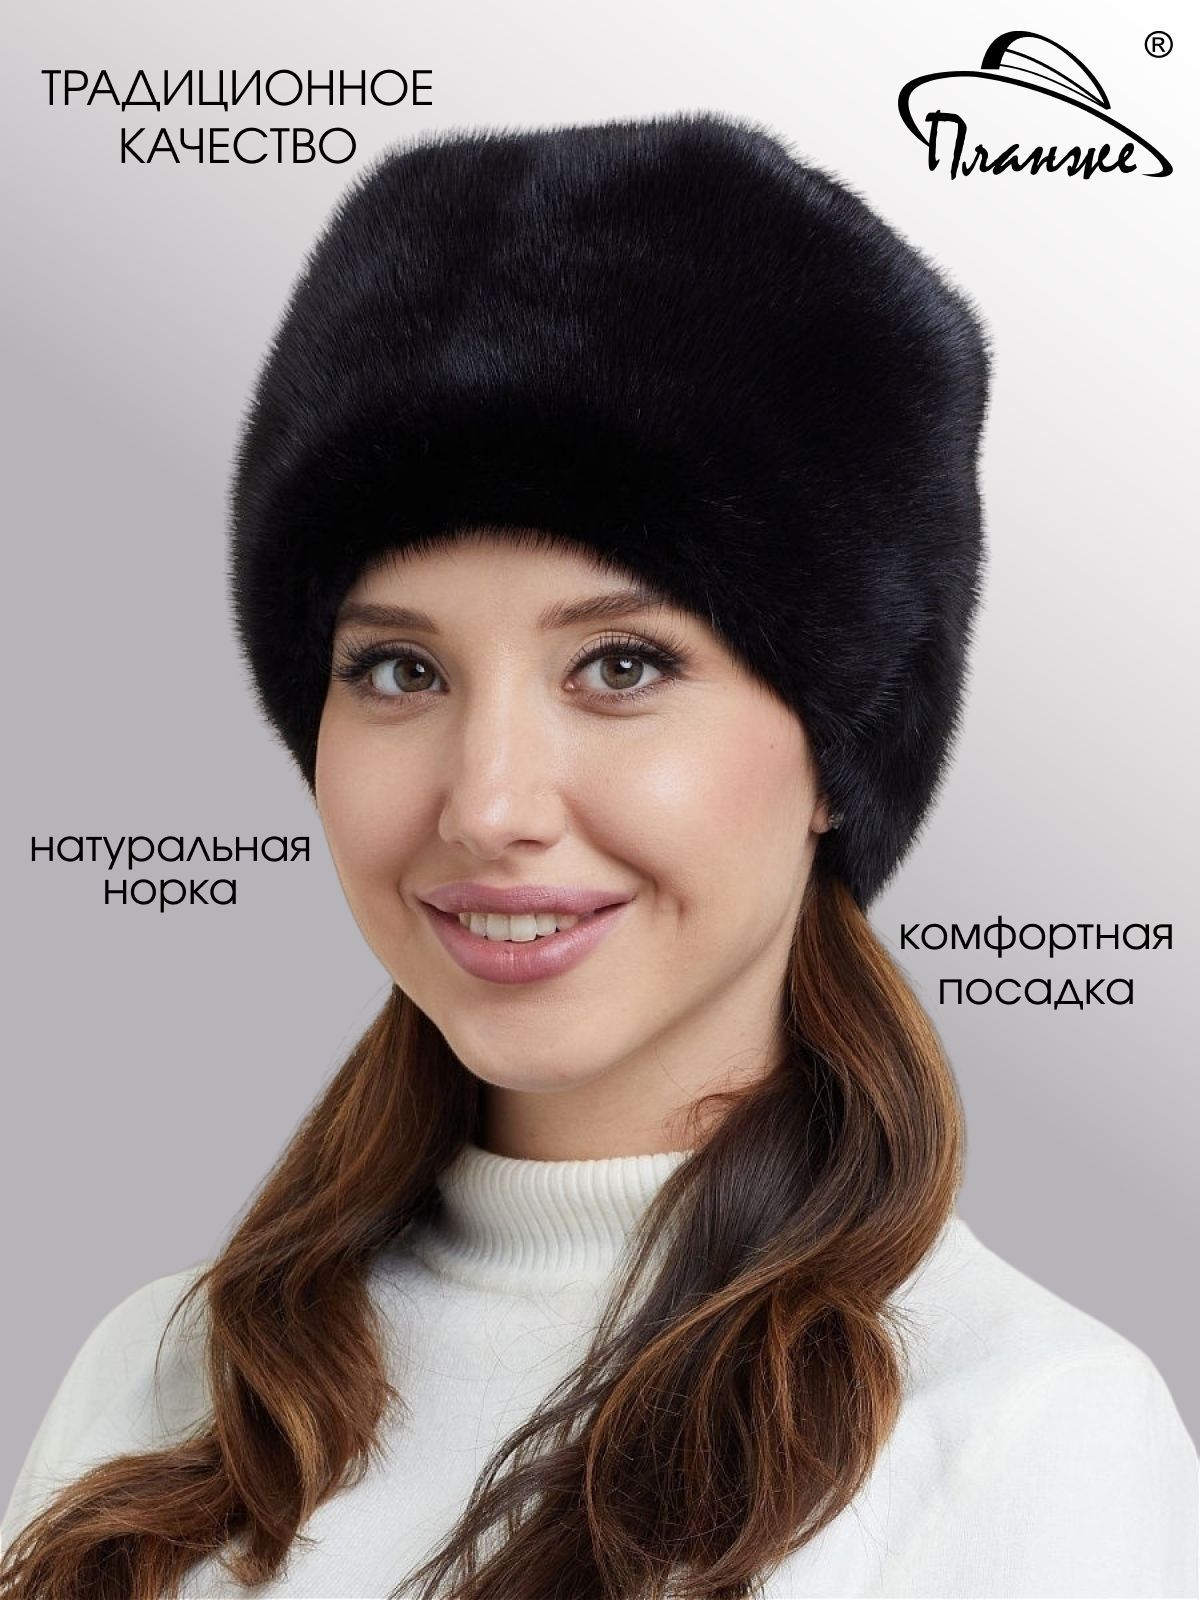 Купить зимние меховые шапки из натурального меха - Интернет магазин 